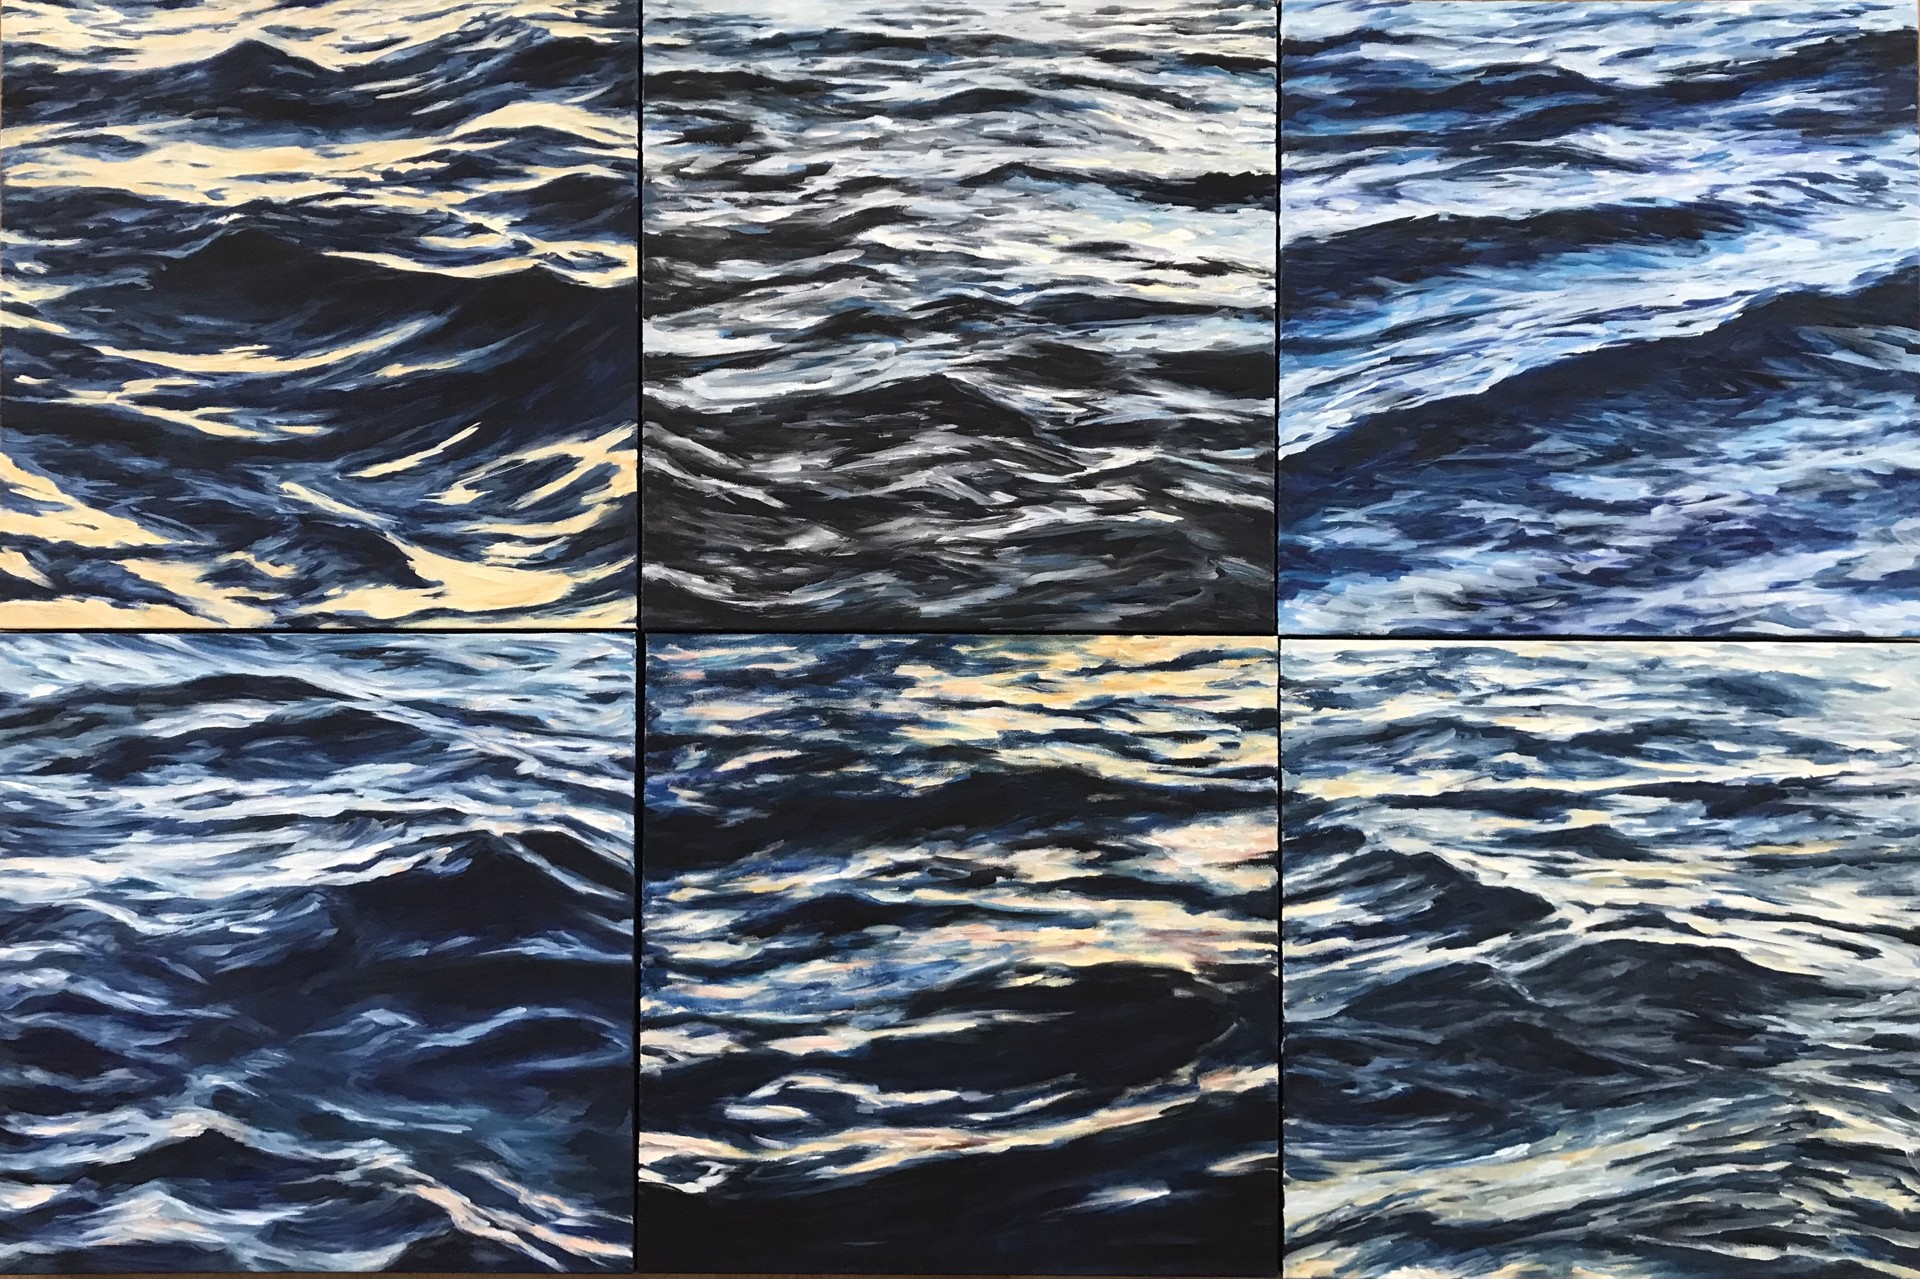 Lahaina Waves 9 by Valerie Eickmeier